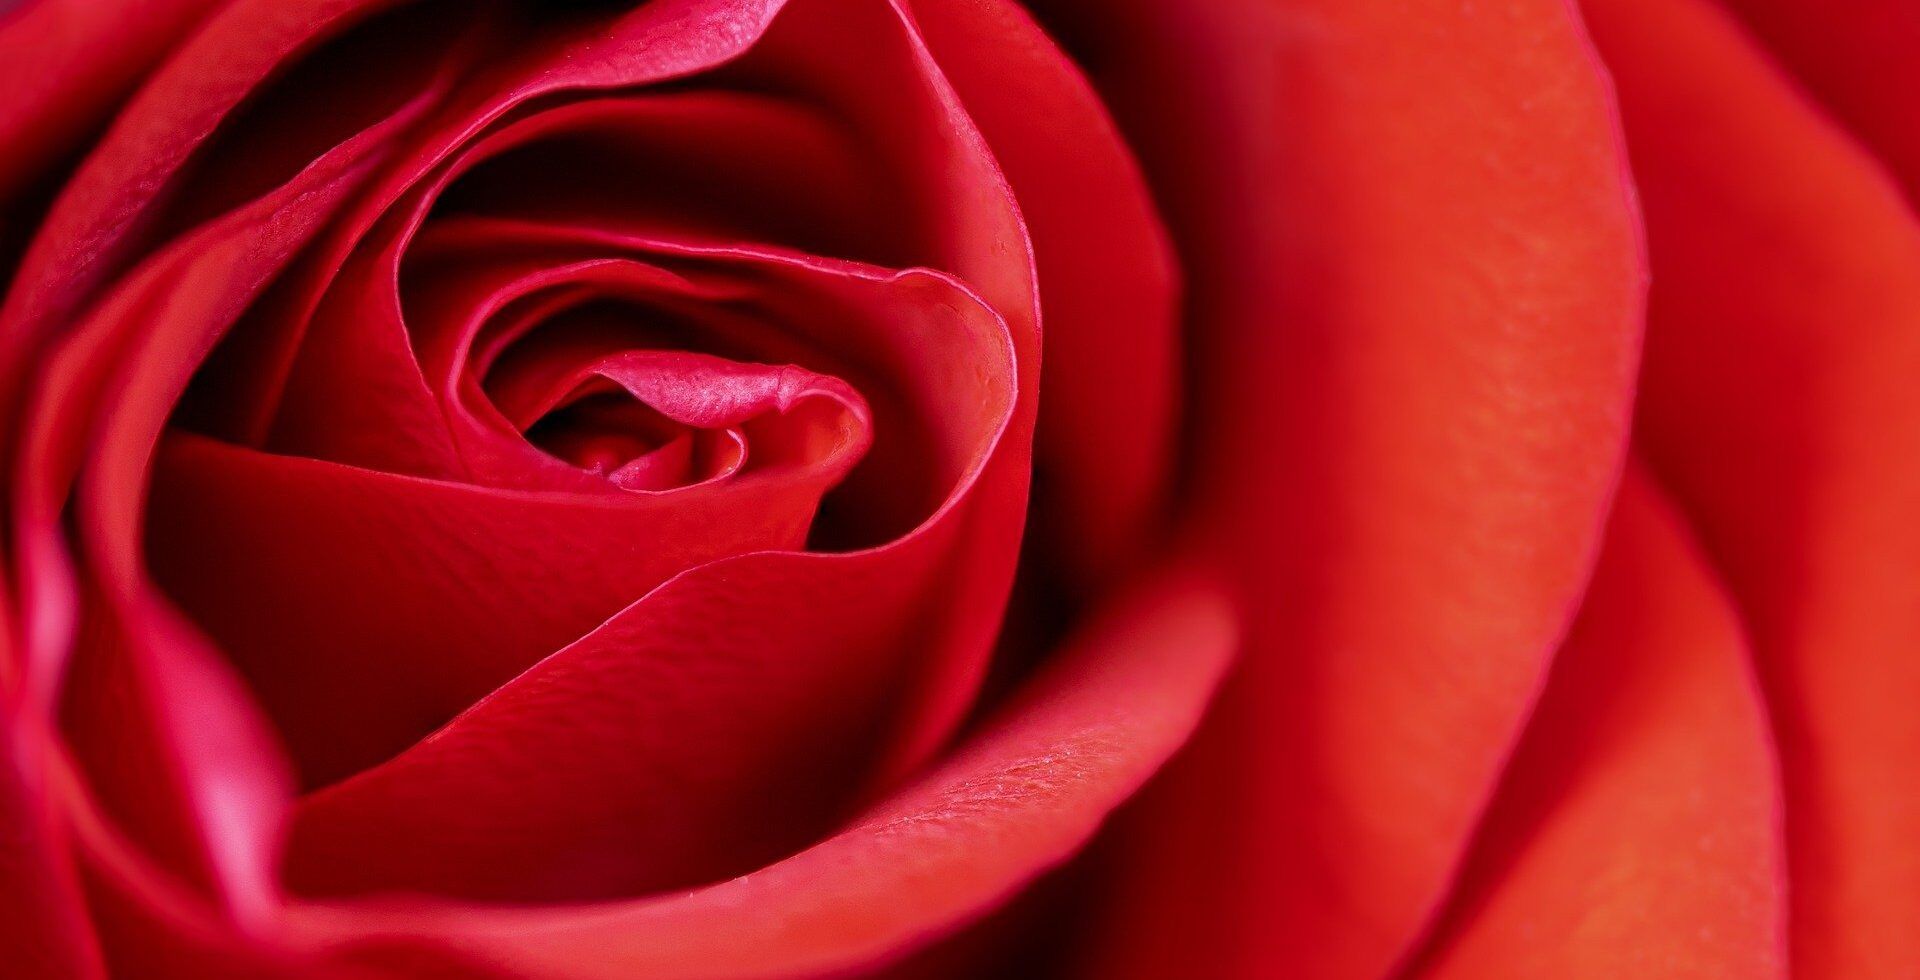 Ramos de rosas rojas para el día de San Valentín